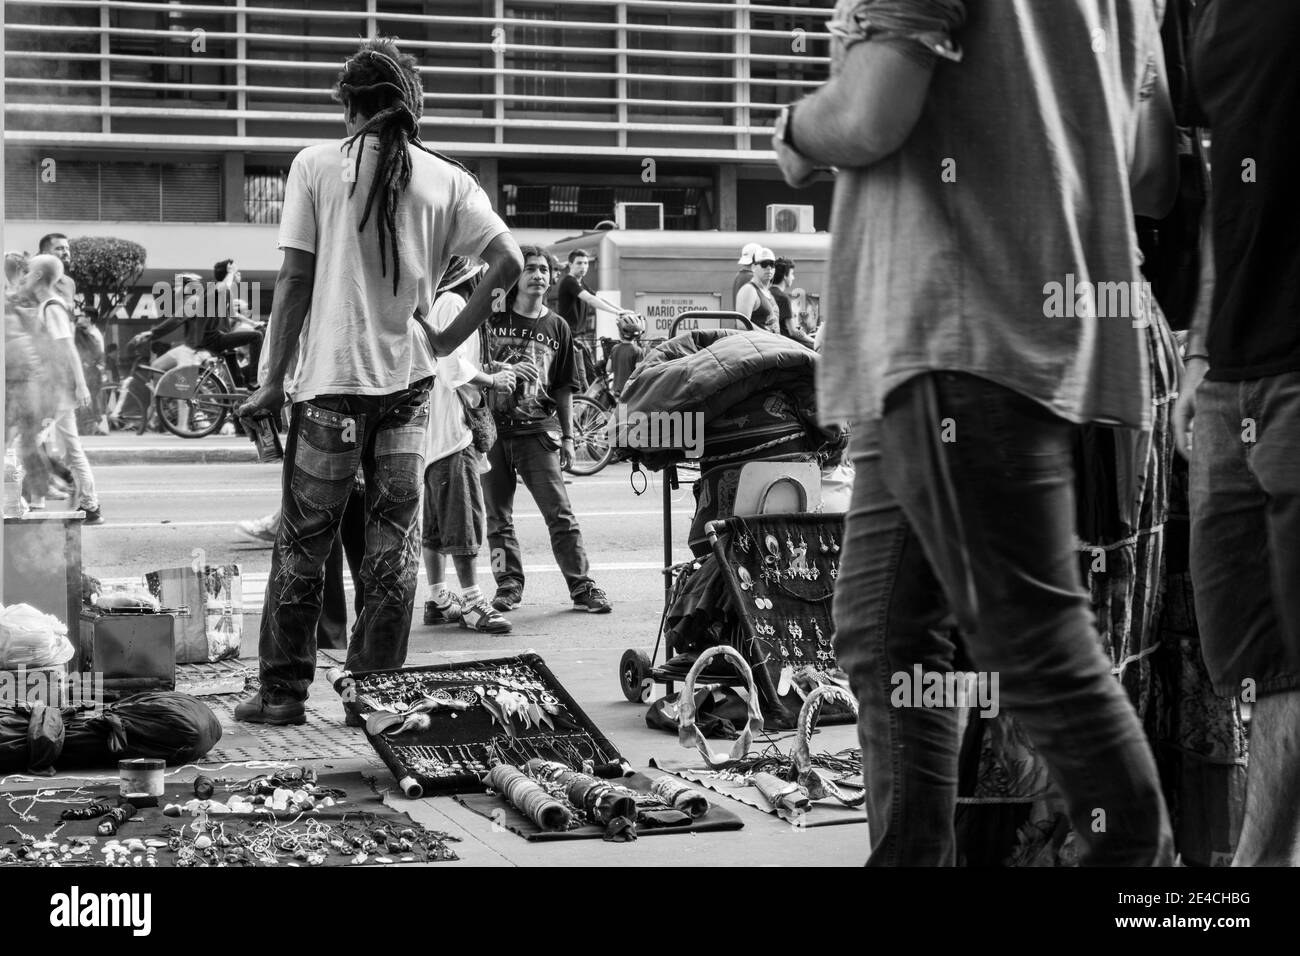 Sao Paulo / Sao Paulo / Brasilien - 08 19 2018: Schwarzer Mann mit Haaren voller Furcht, der seine Waren auf der Straße verkauft [Schwarz-Weiß-Version] Stockfoto